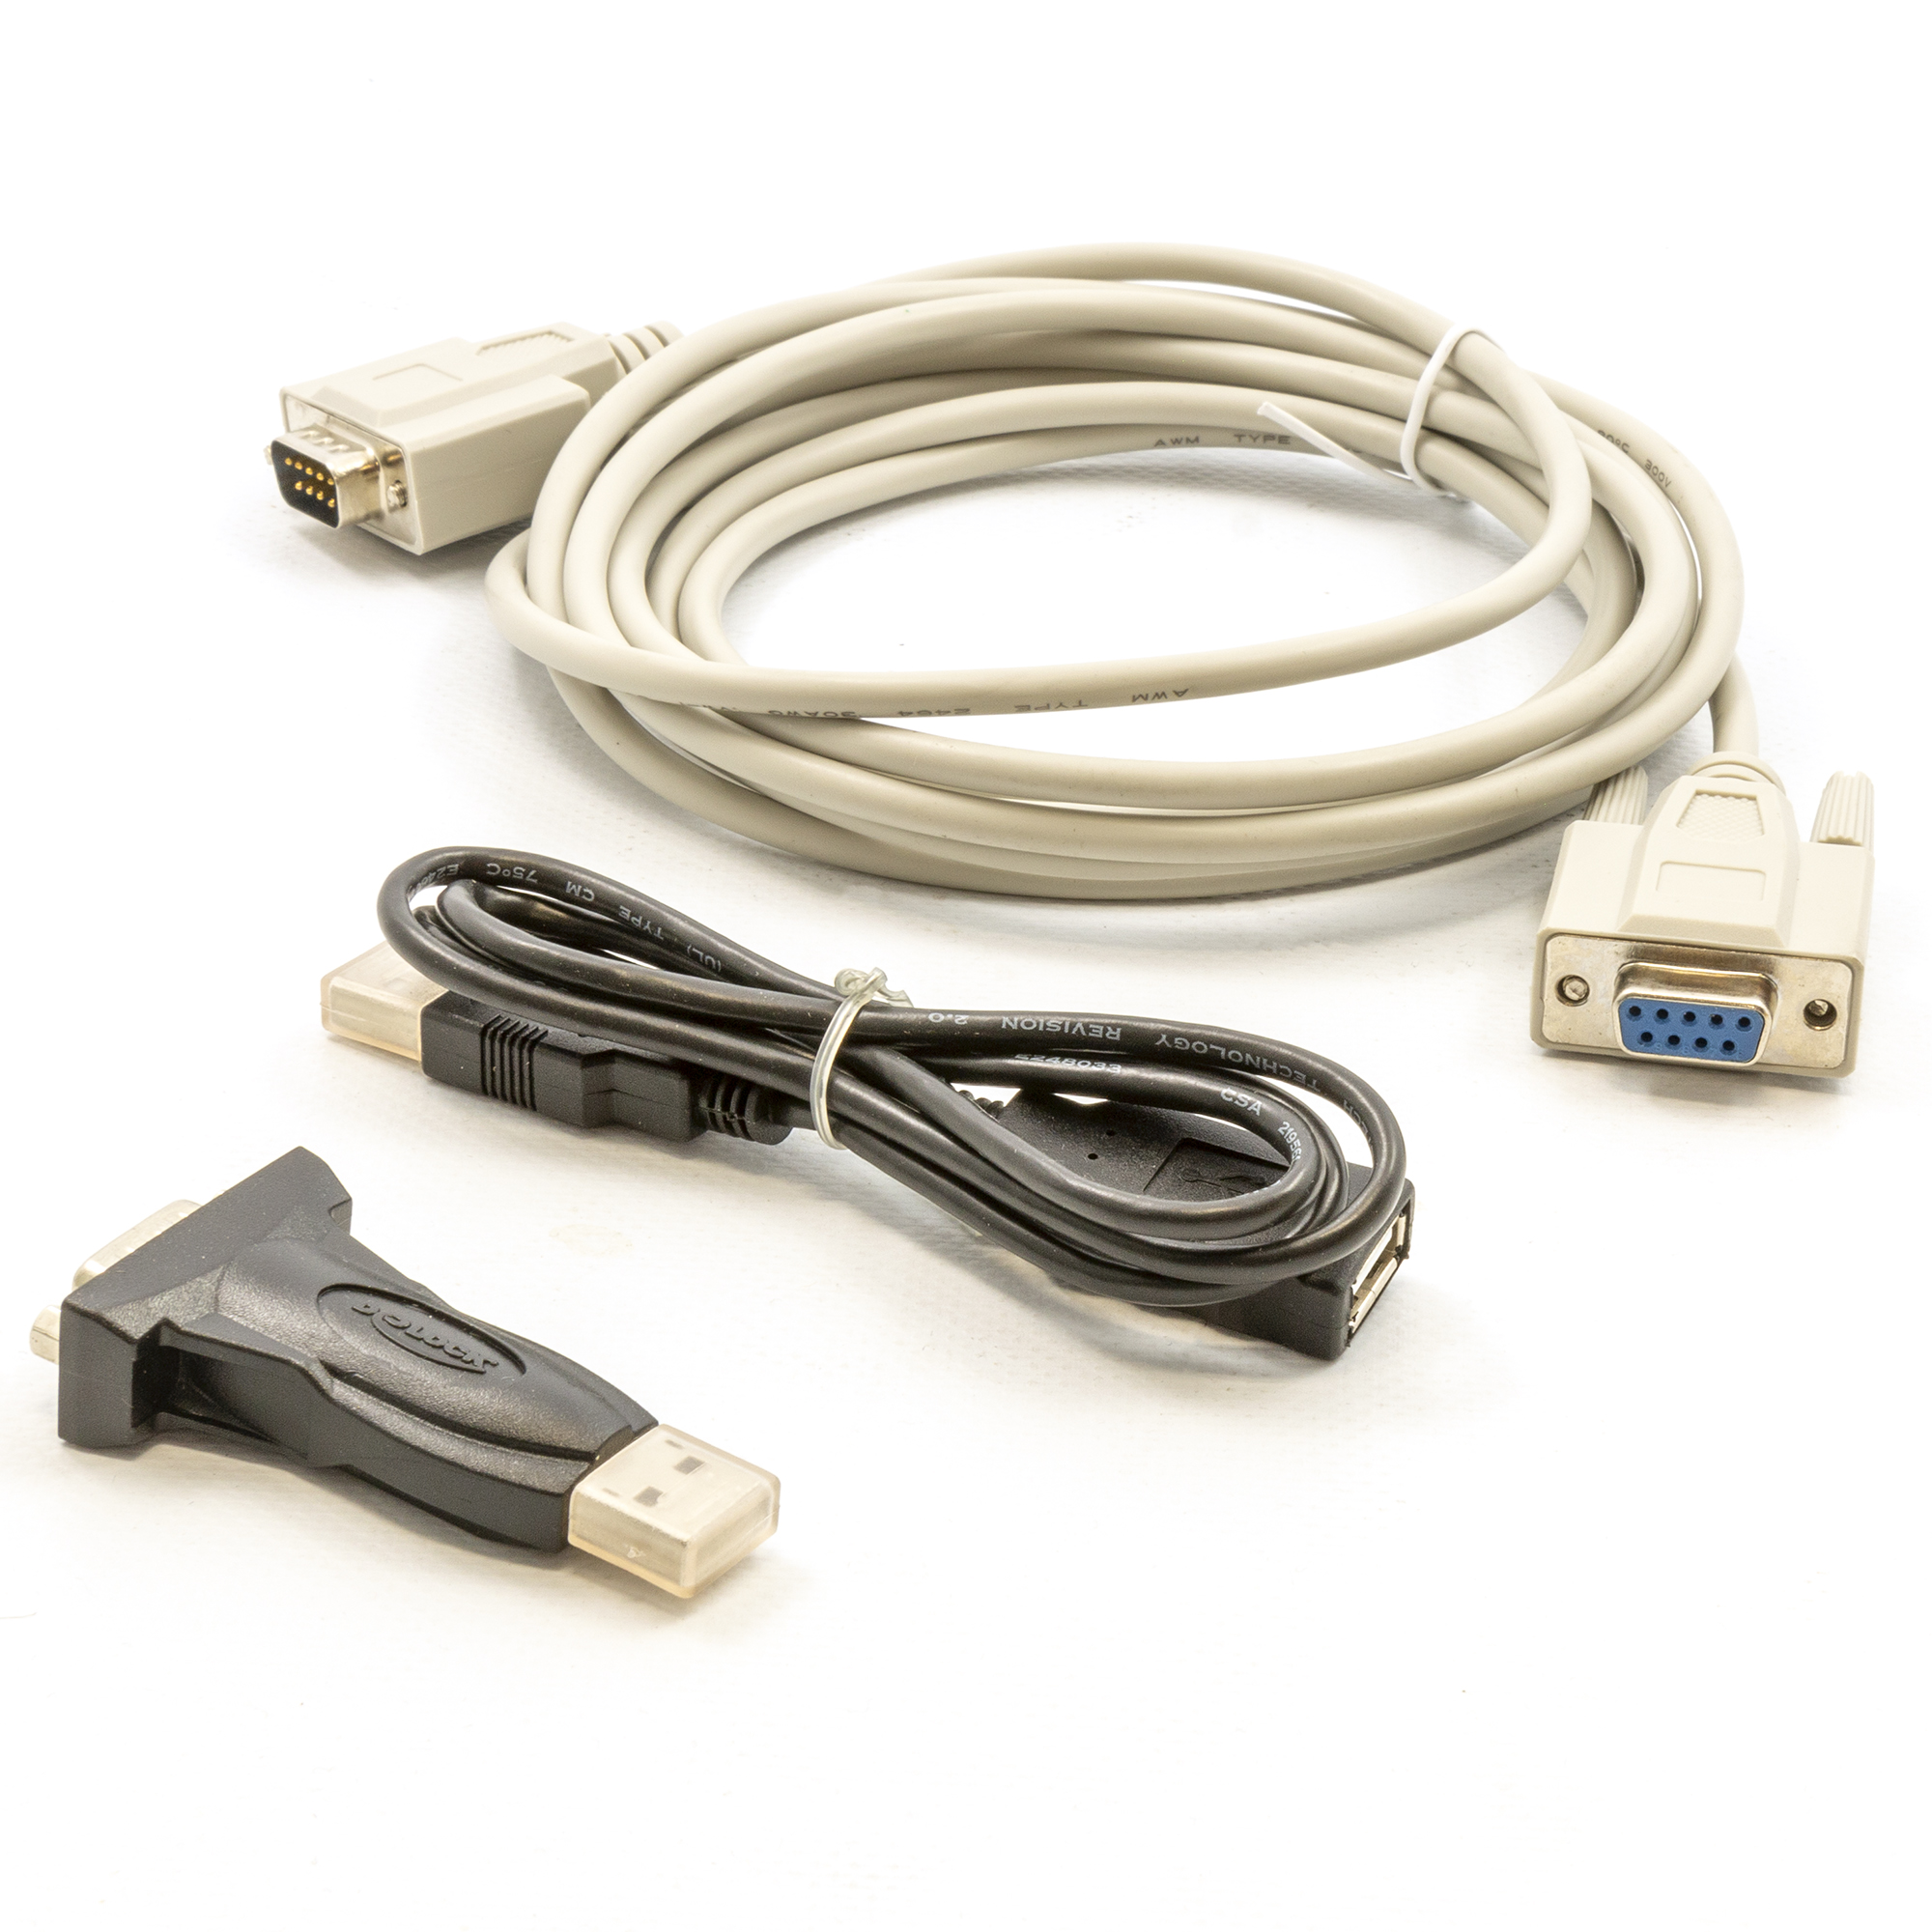 CONT 82-Q0800/3 Seriële kabel en RS232-USB adapter voor connectie met PC